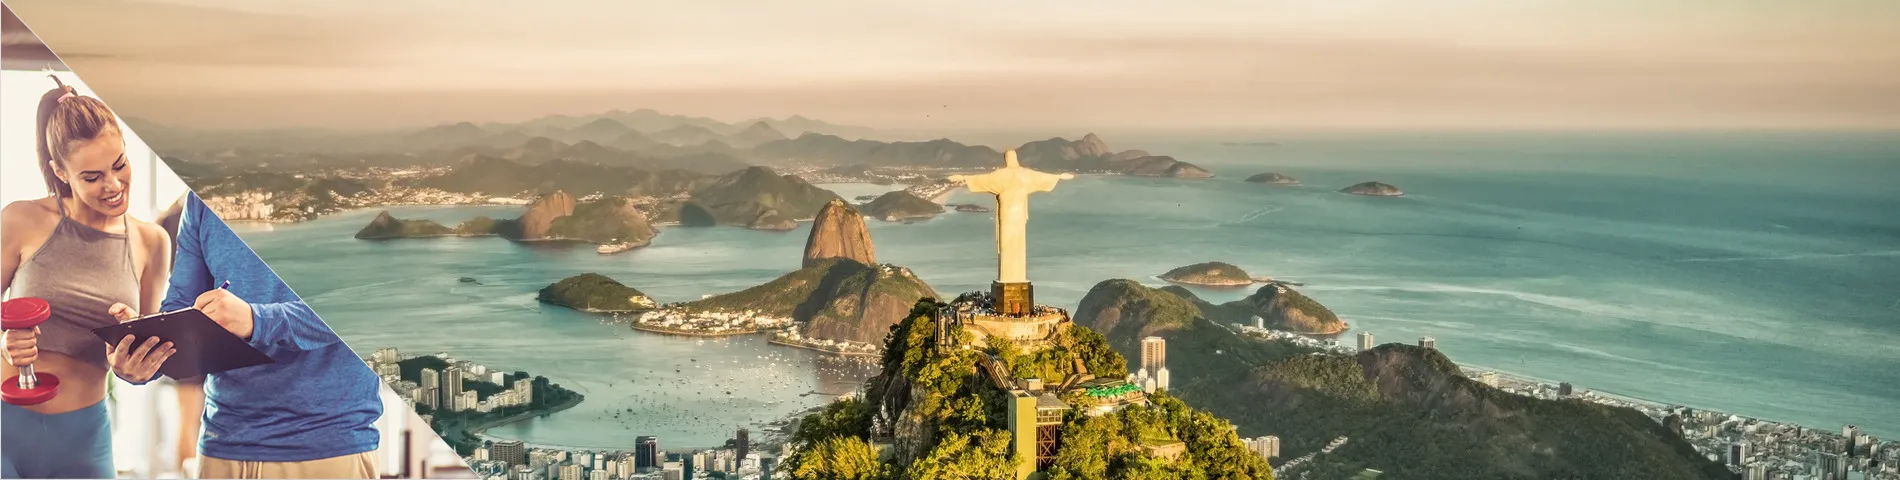 Рио-де-Жанейро - Португальский и фитнес